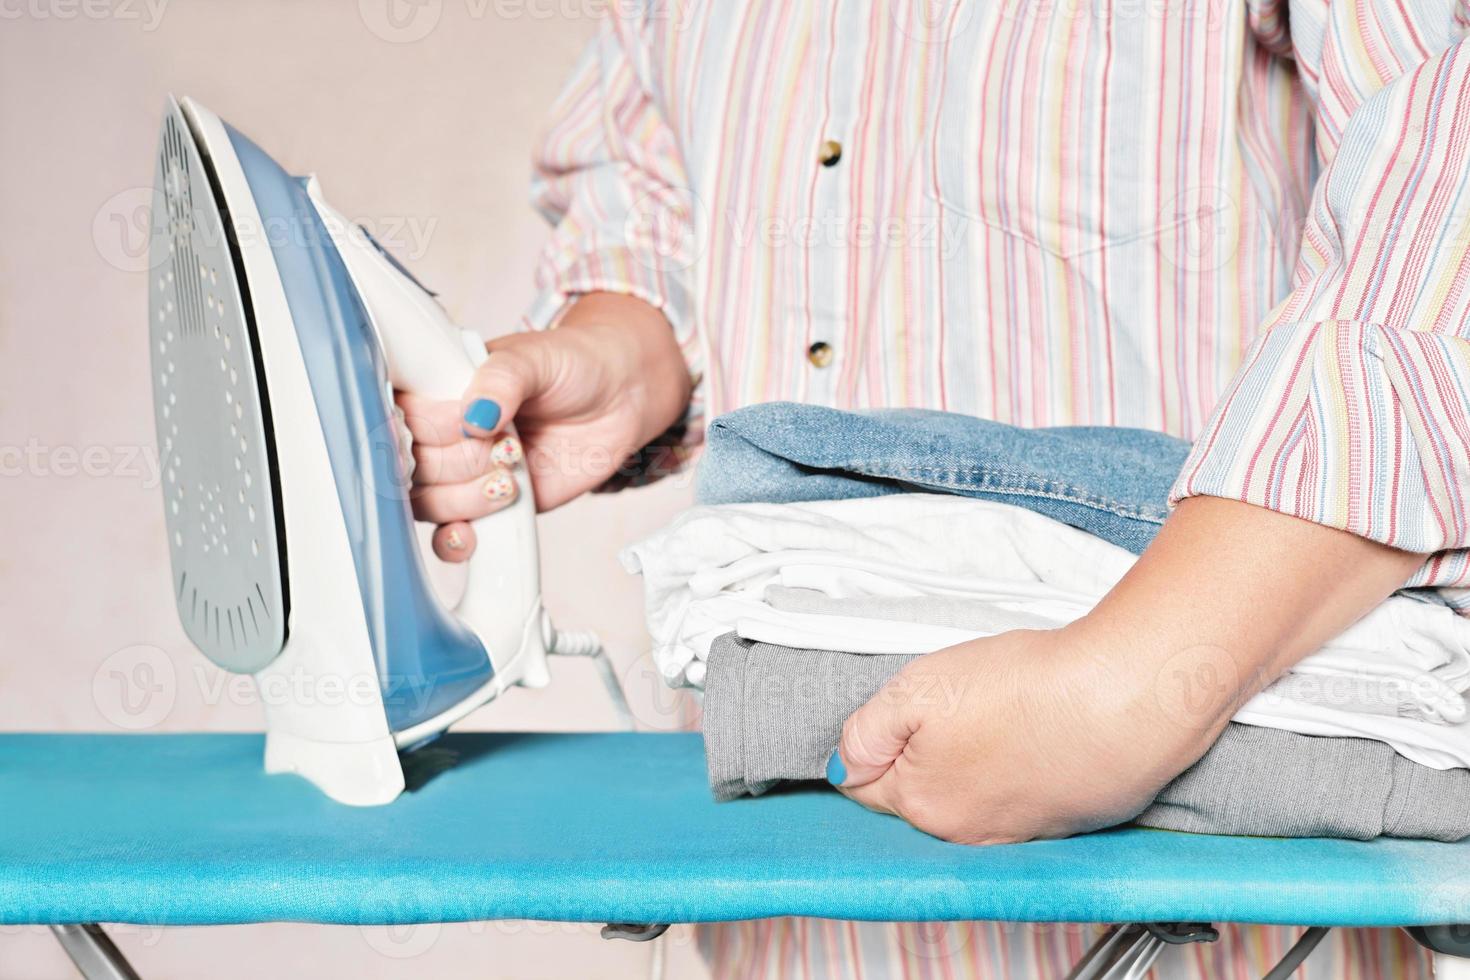 pila de ropa y mujer con hierro. trabajo a domicilio, tareas domésticas, concepto de limpieza. Ropa textil azul gris blanca. foto